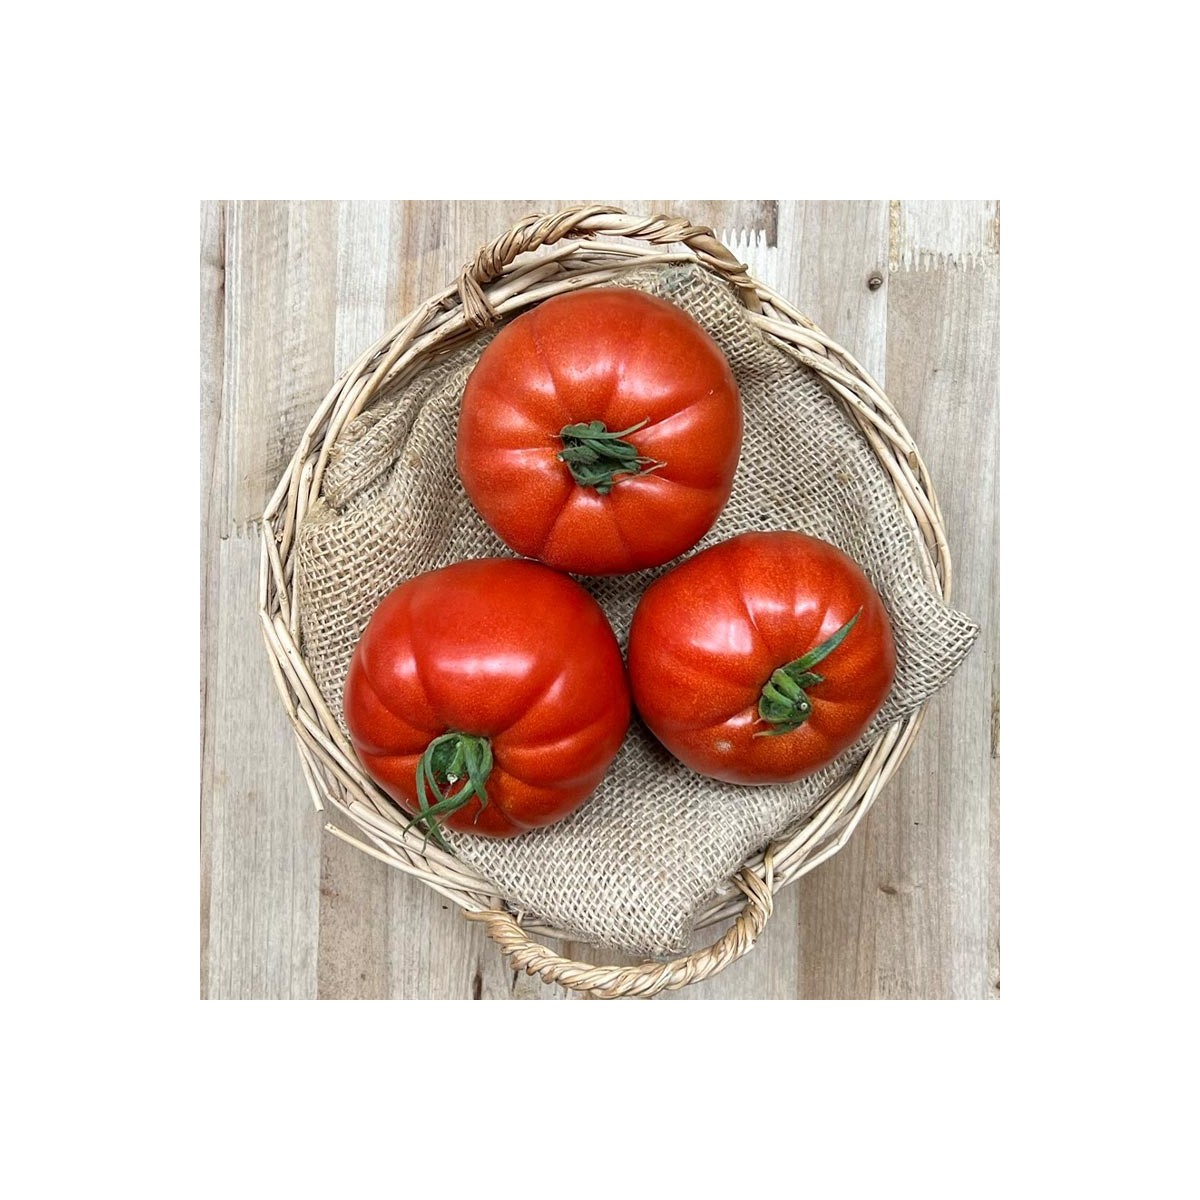 Tomates Huevo de Toro - - Selección de Tomates -1- Lo mejor de la fruta